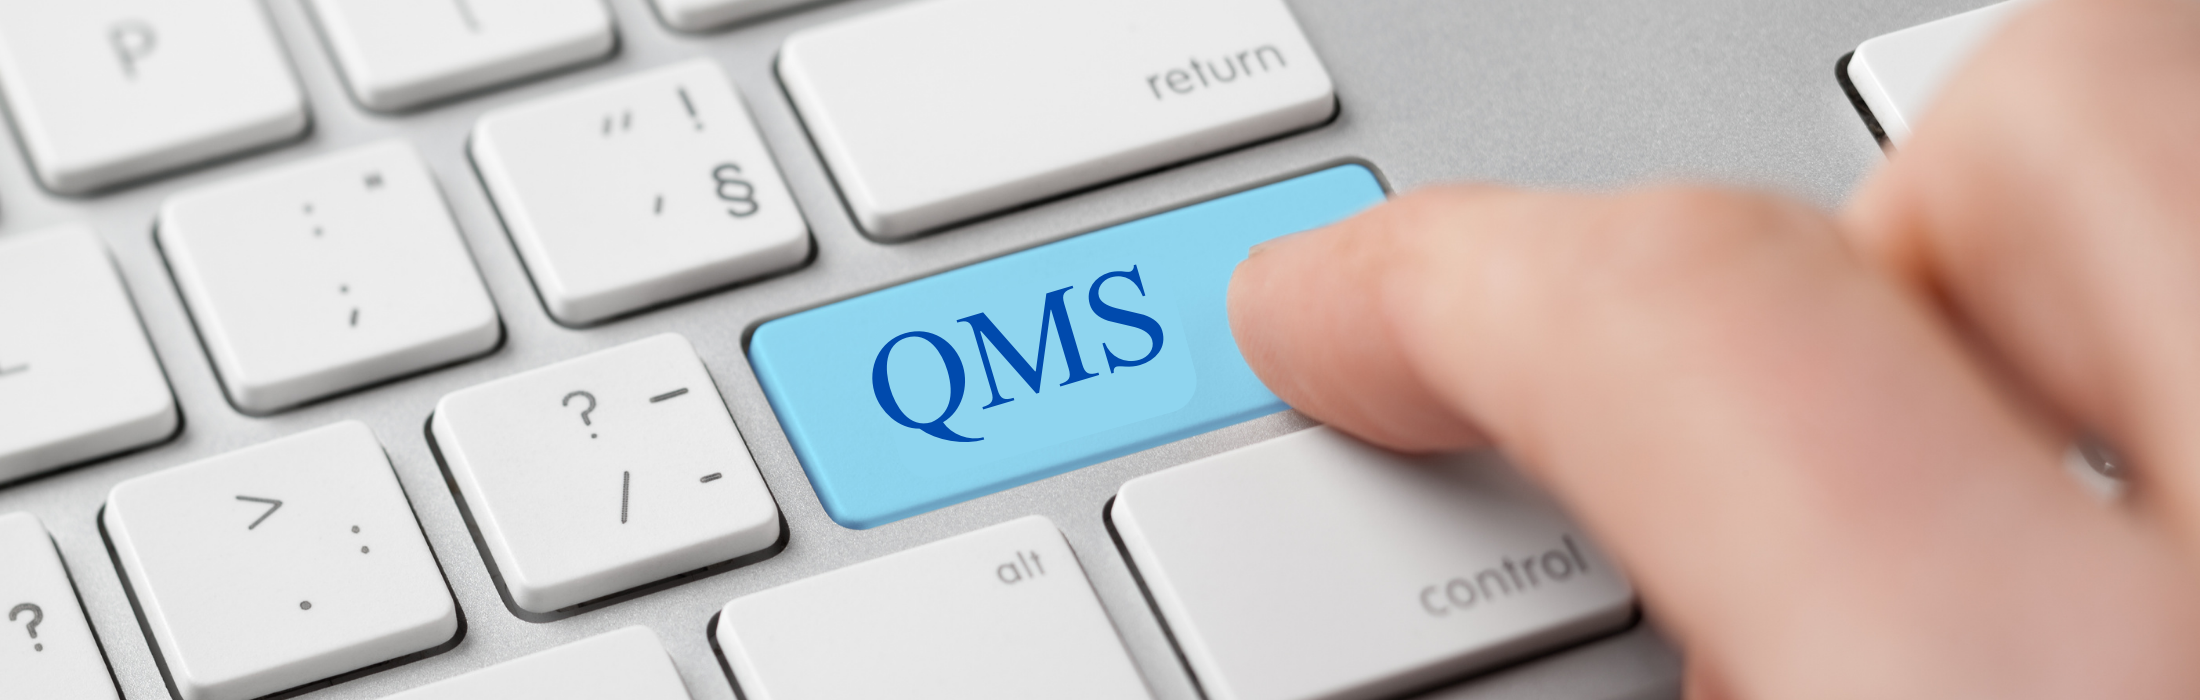 בקרת איכות בארגונים - יישום QMS